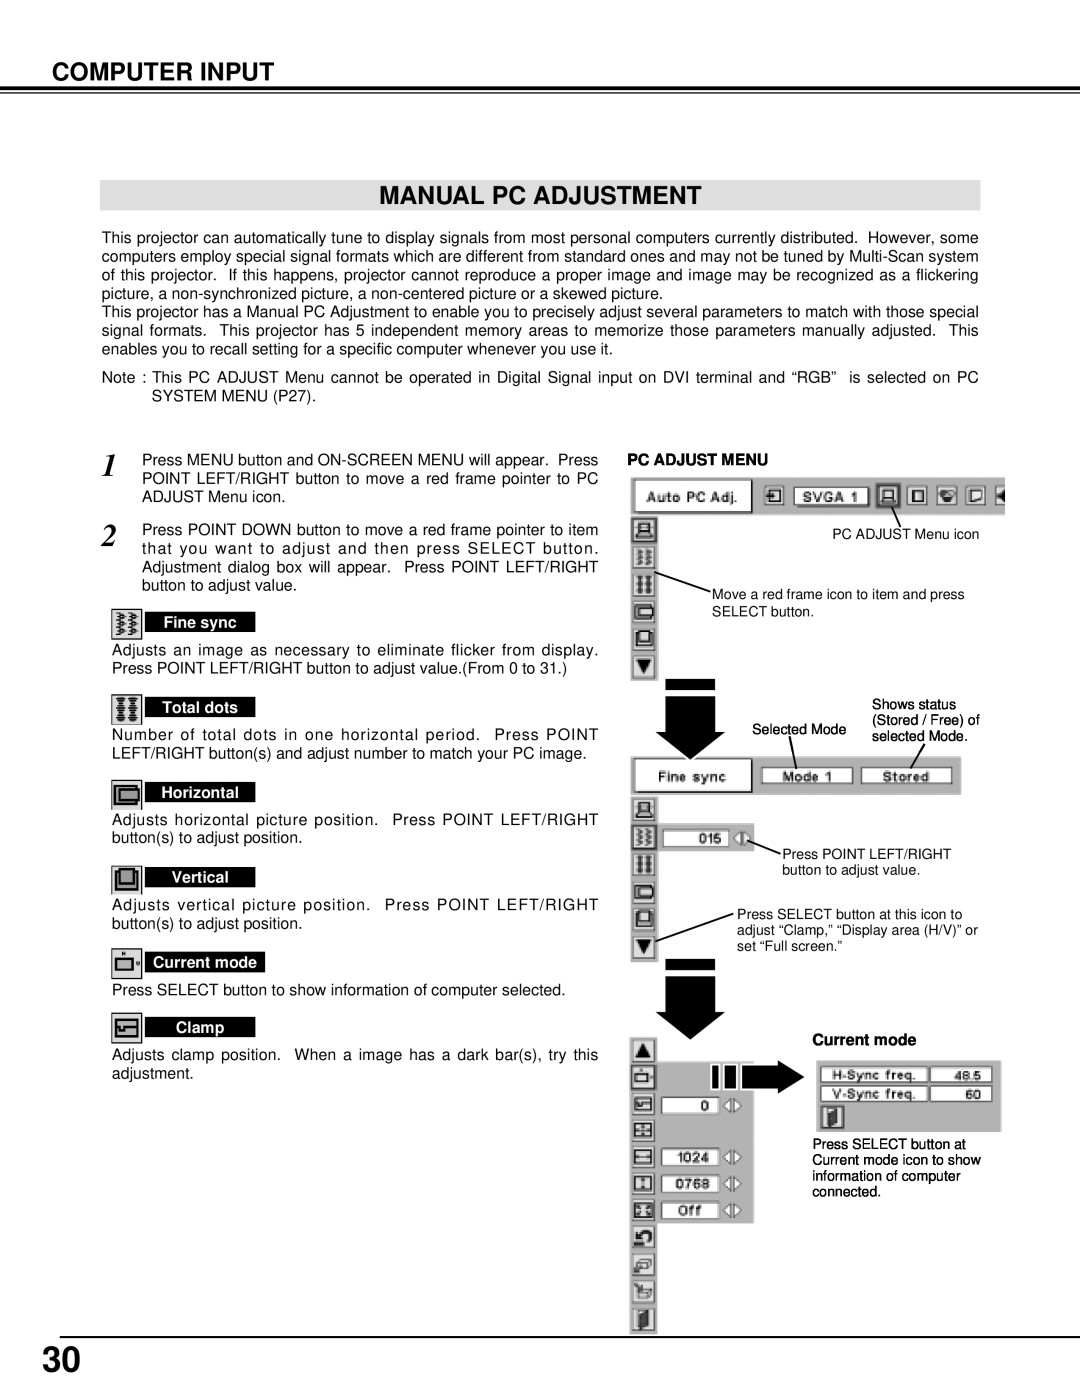 Eiki LC-XT2 instruction manual Computer Input Manual Pc Adjustment, Pc Adjust Menu, Current mode 